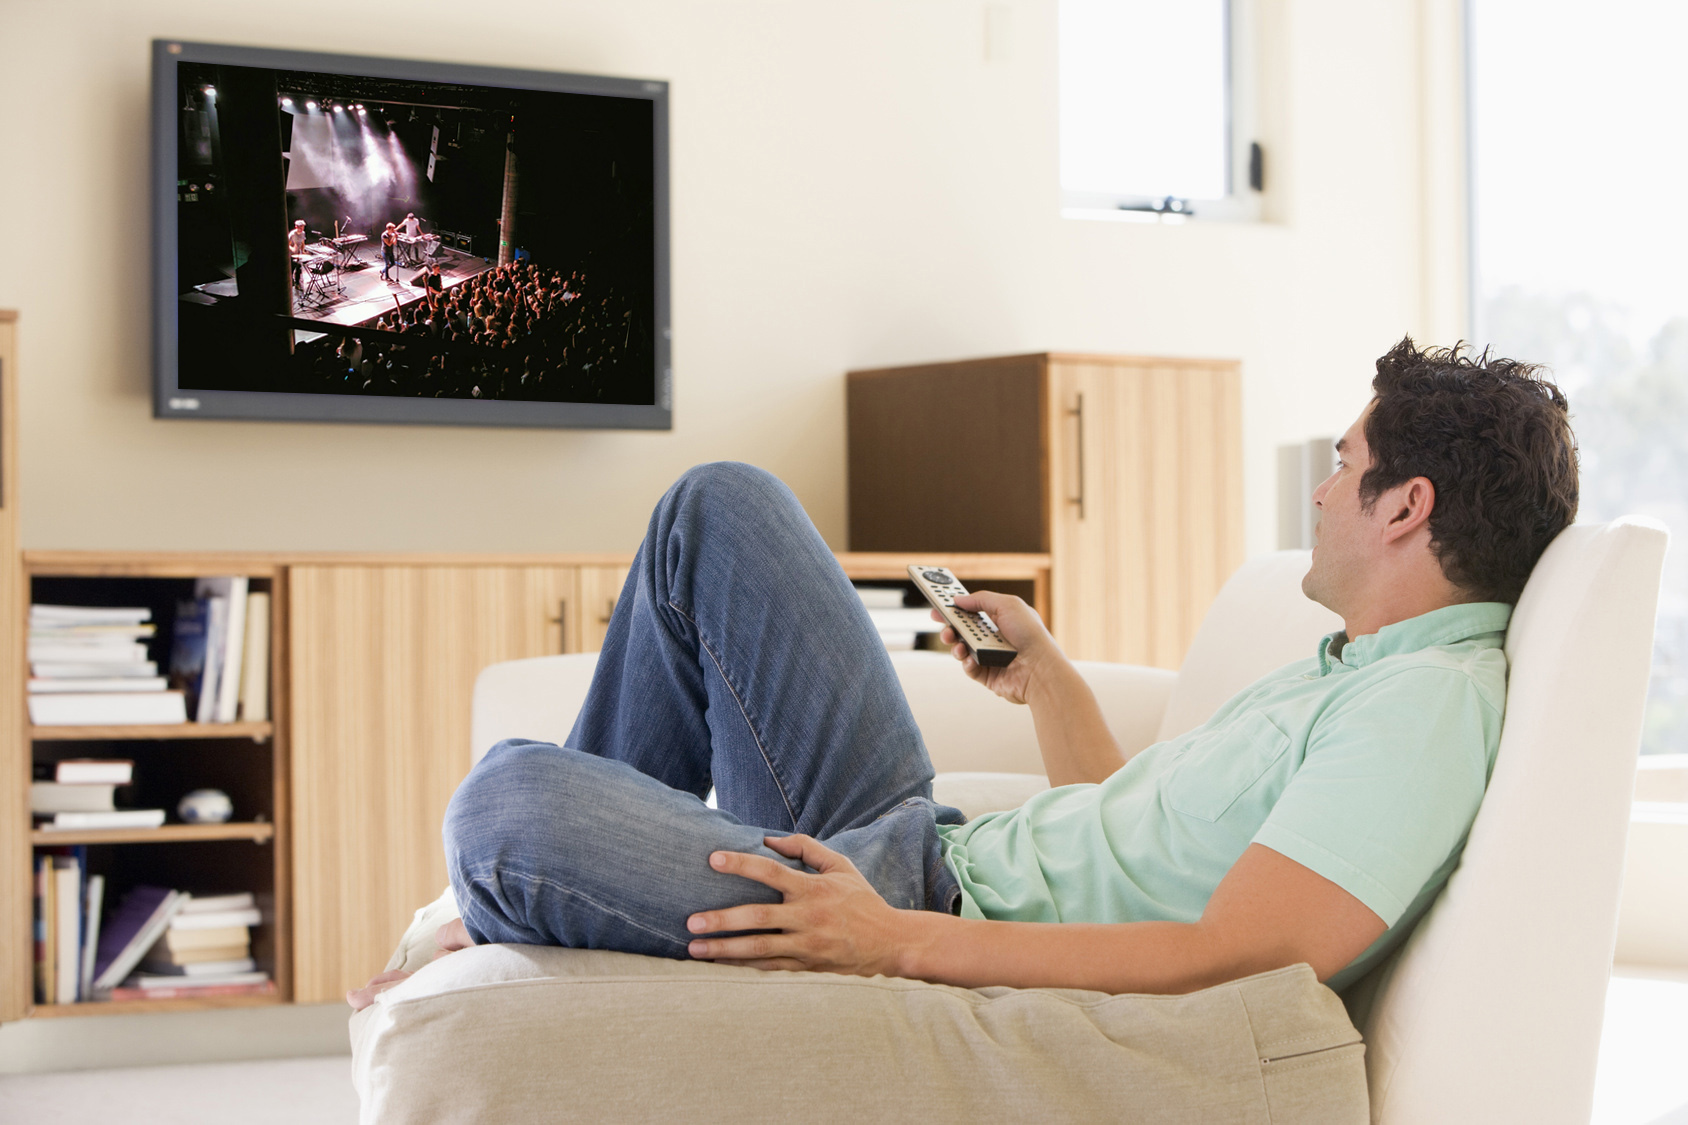 Постоянно смотрит телевизор. Человек перед телевизором. Сидит перед телевизором. Мужчина на диване перед телевизором. Мужчина смотрит телевизор.